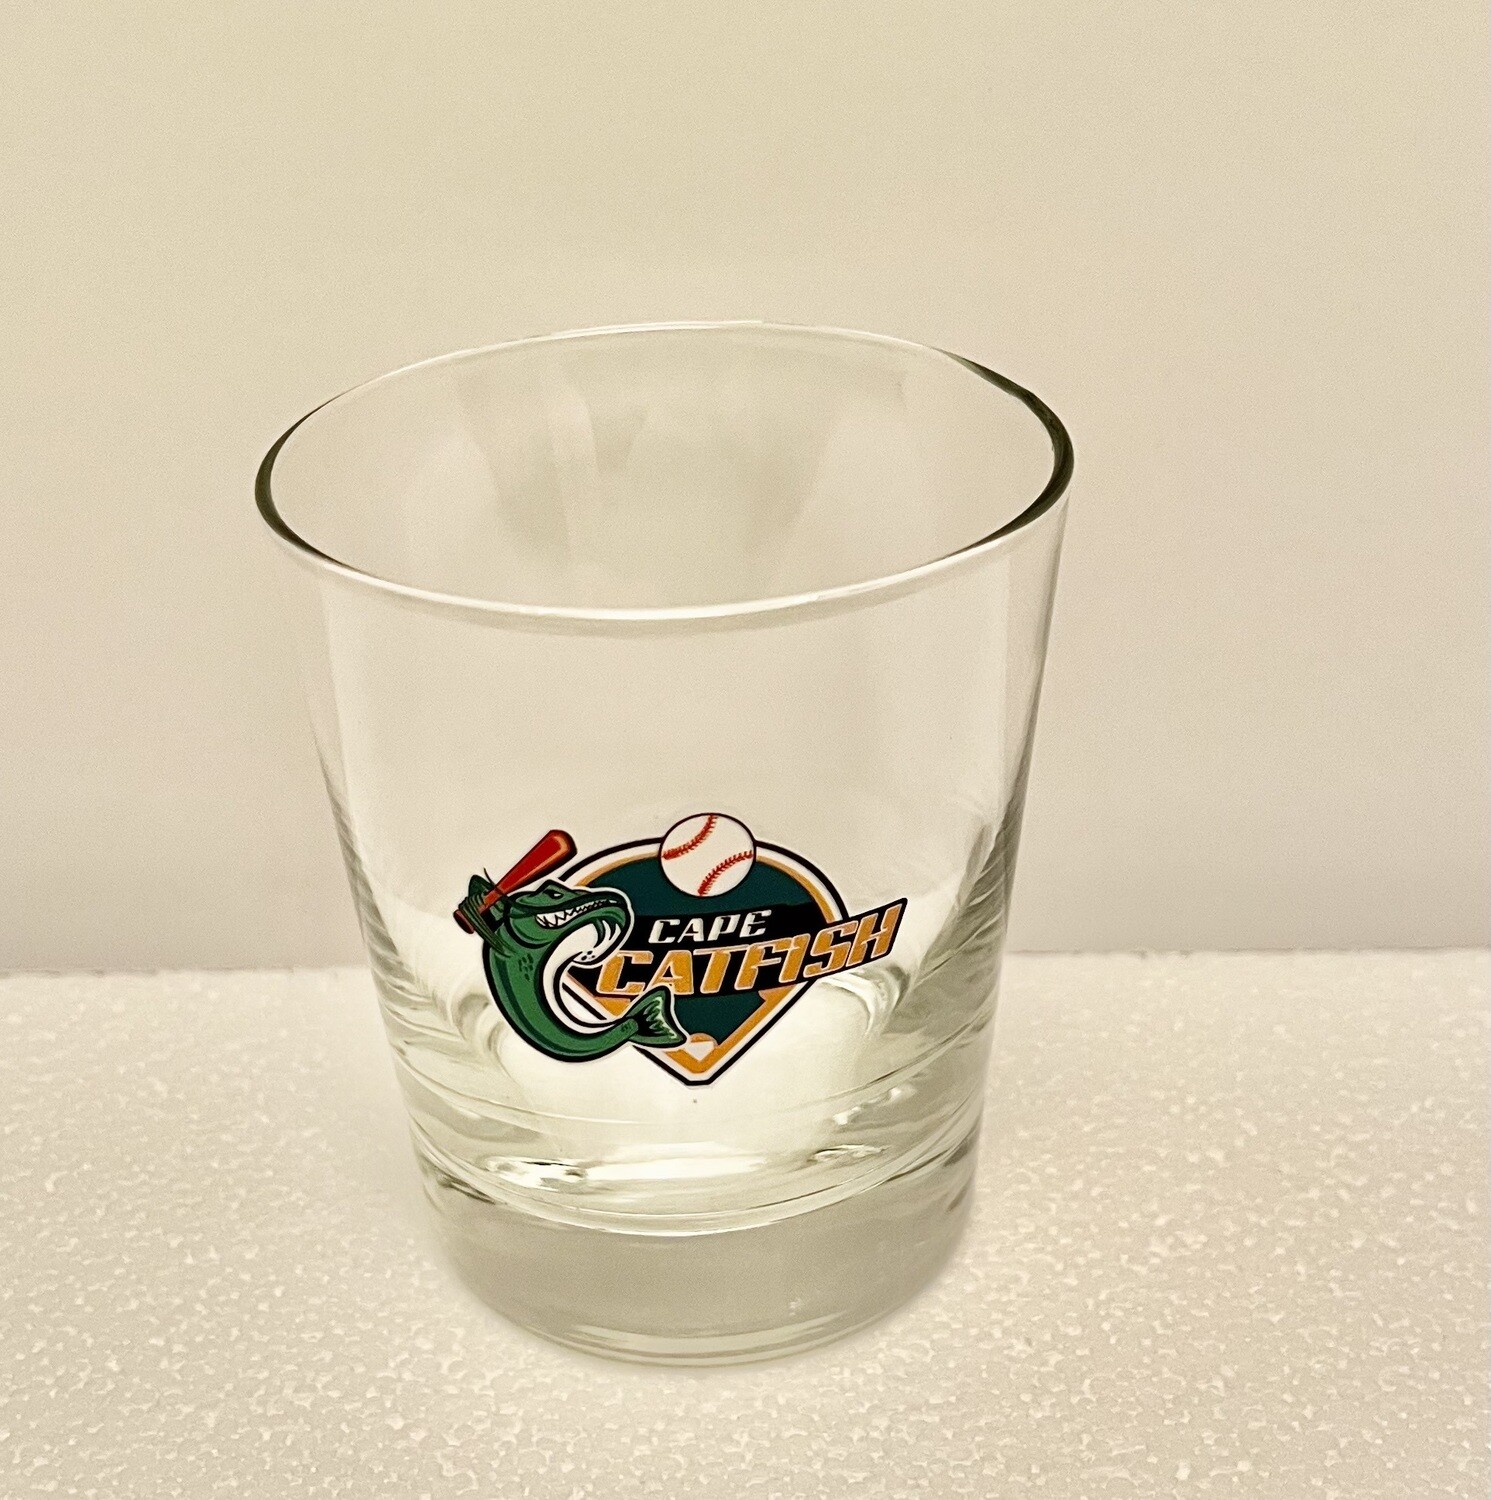 Catfish Hi-Ball Glass